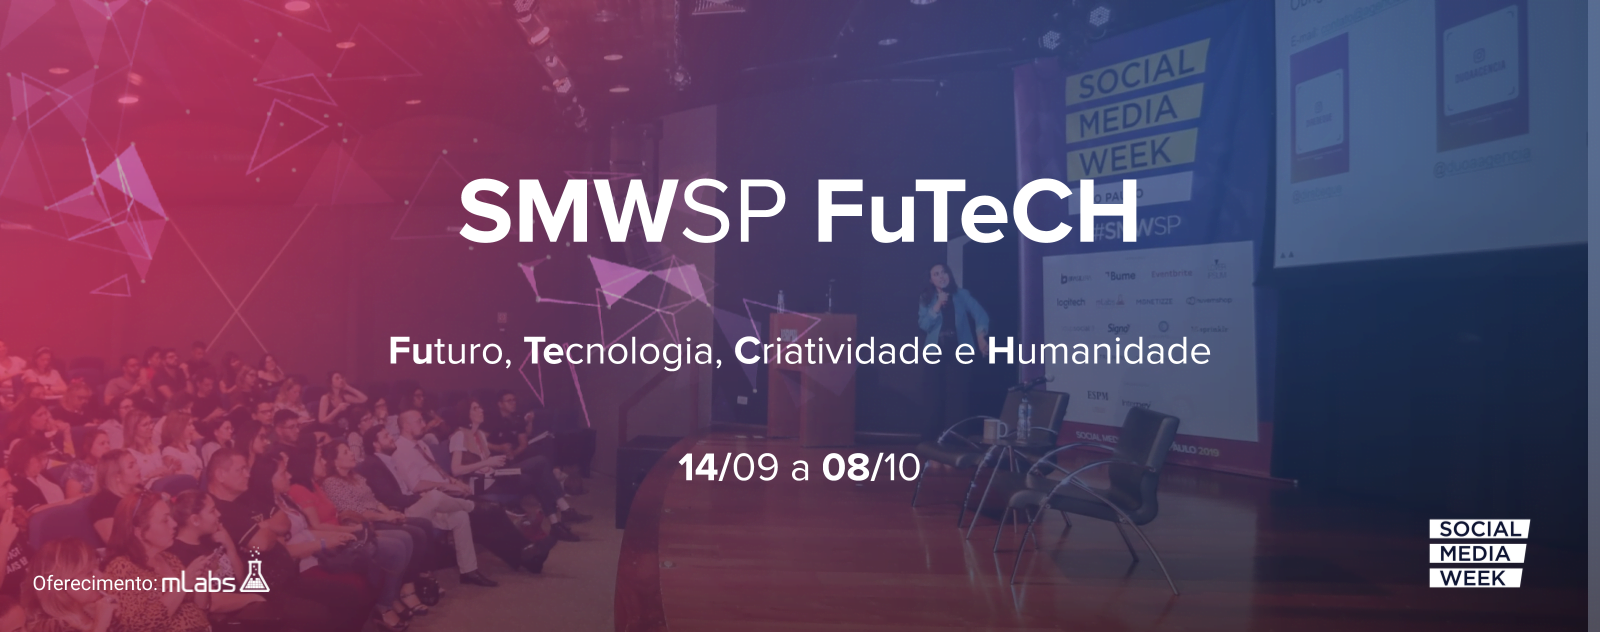 Social Media Week São Paulo 2020: Futuro, Tecnologia, Criatividade e Humanidade